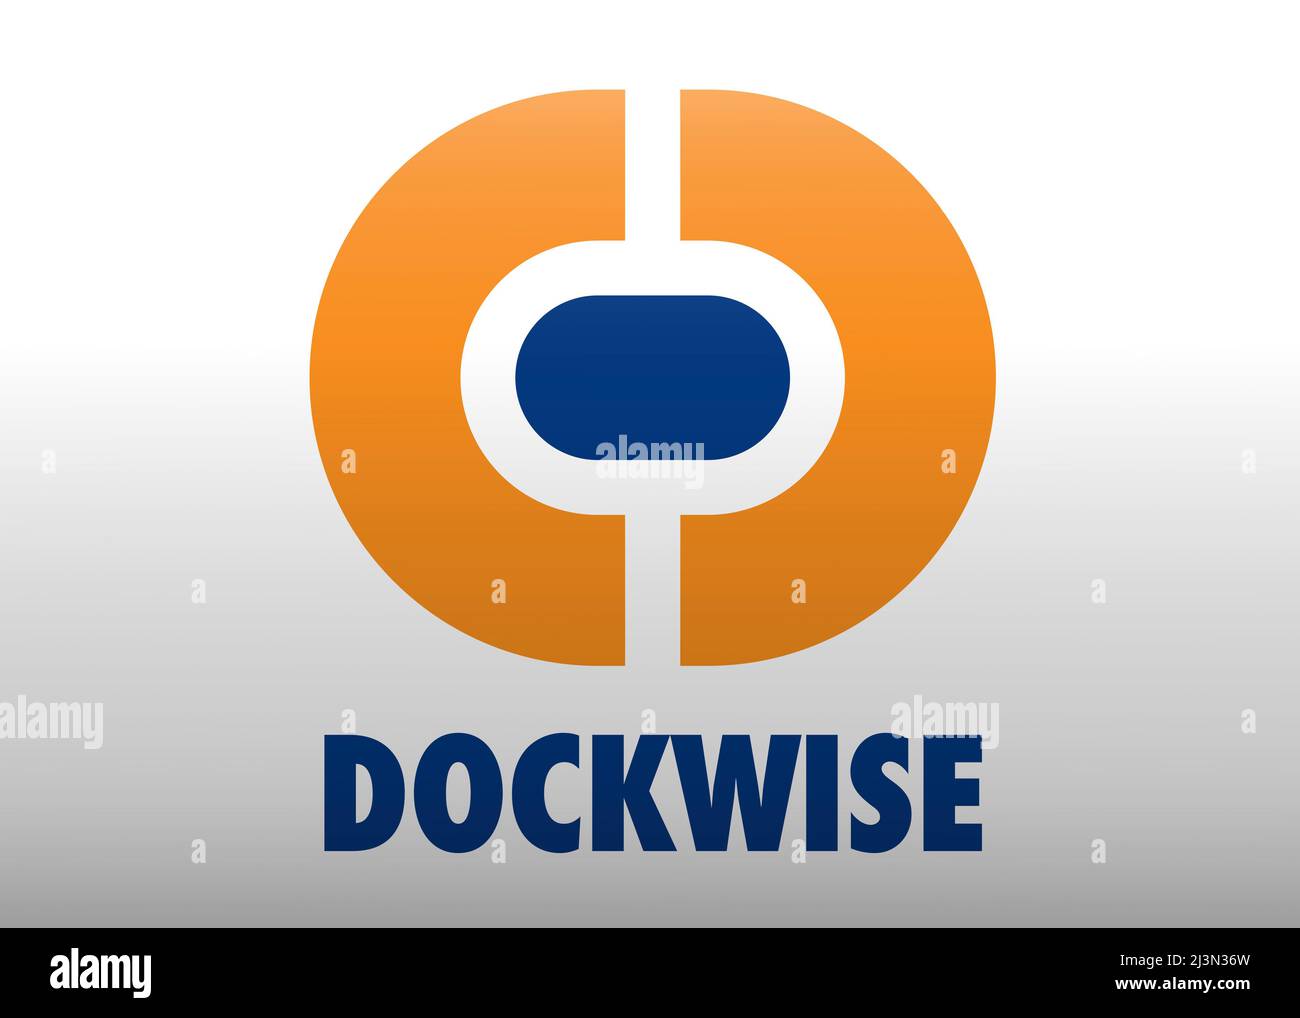 Dockwise logo Stock Photo